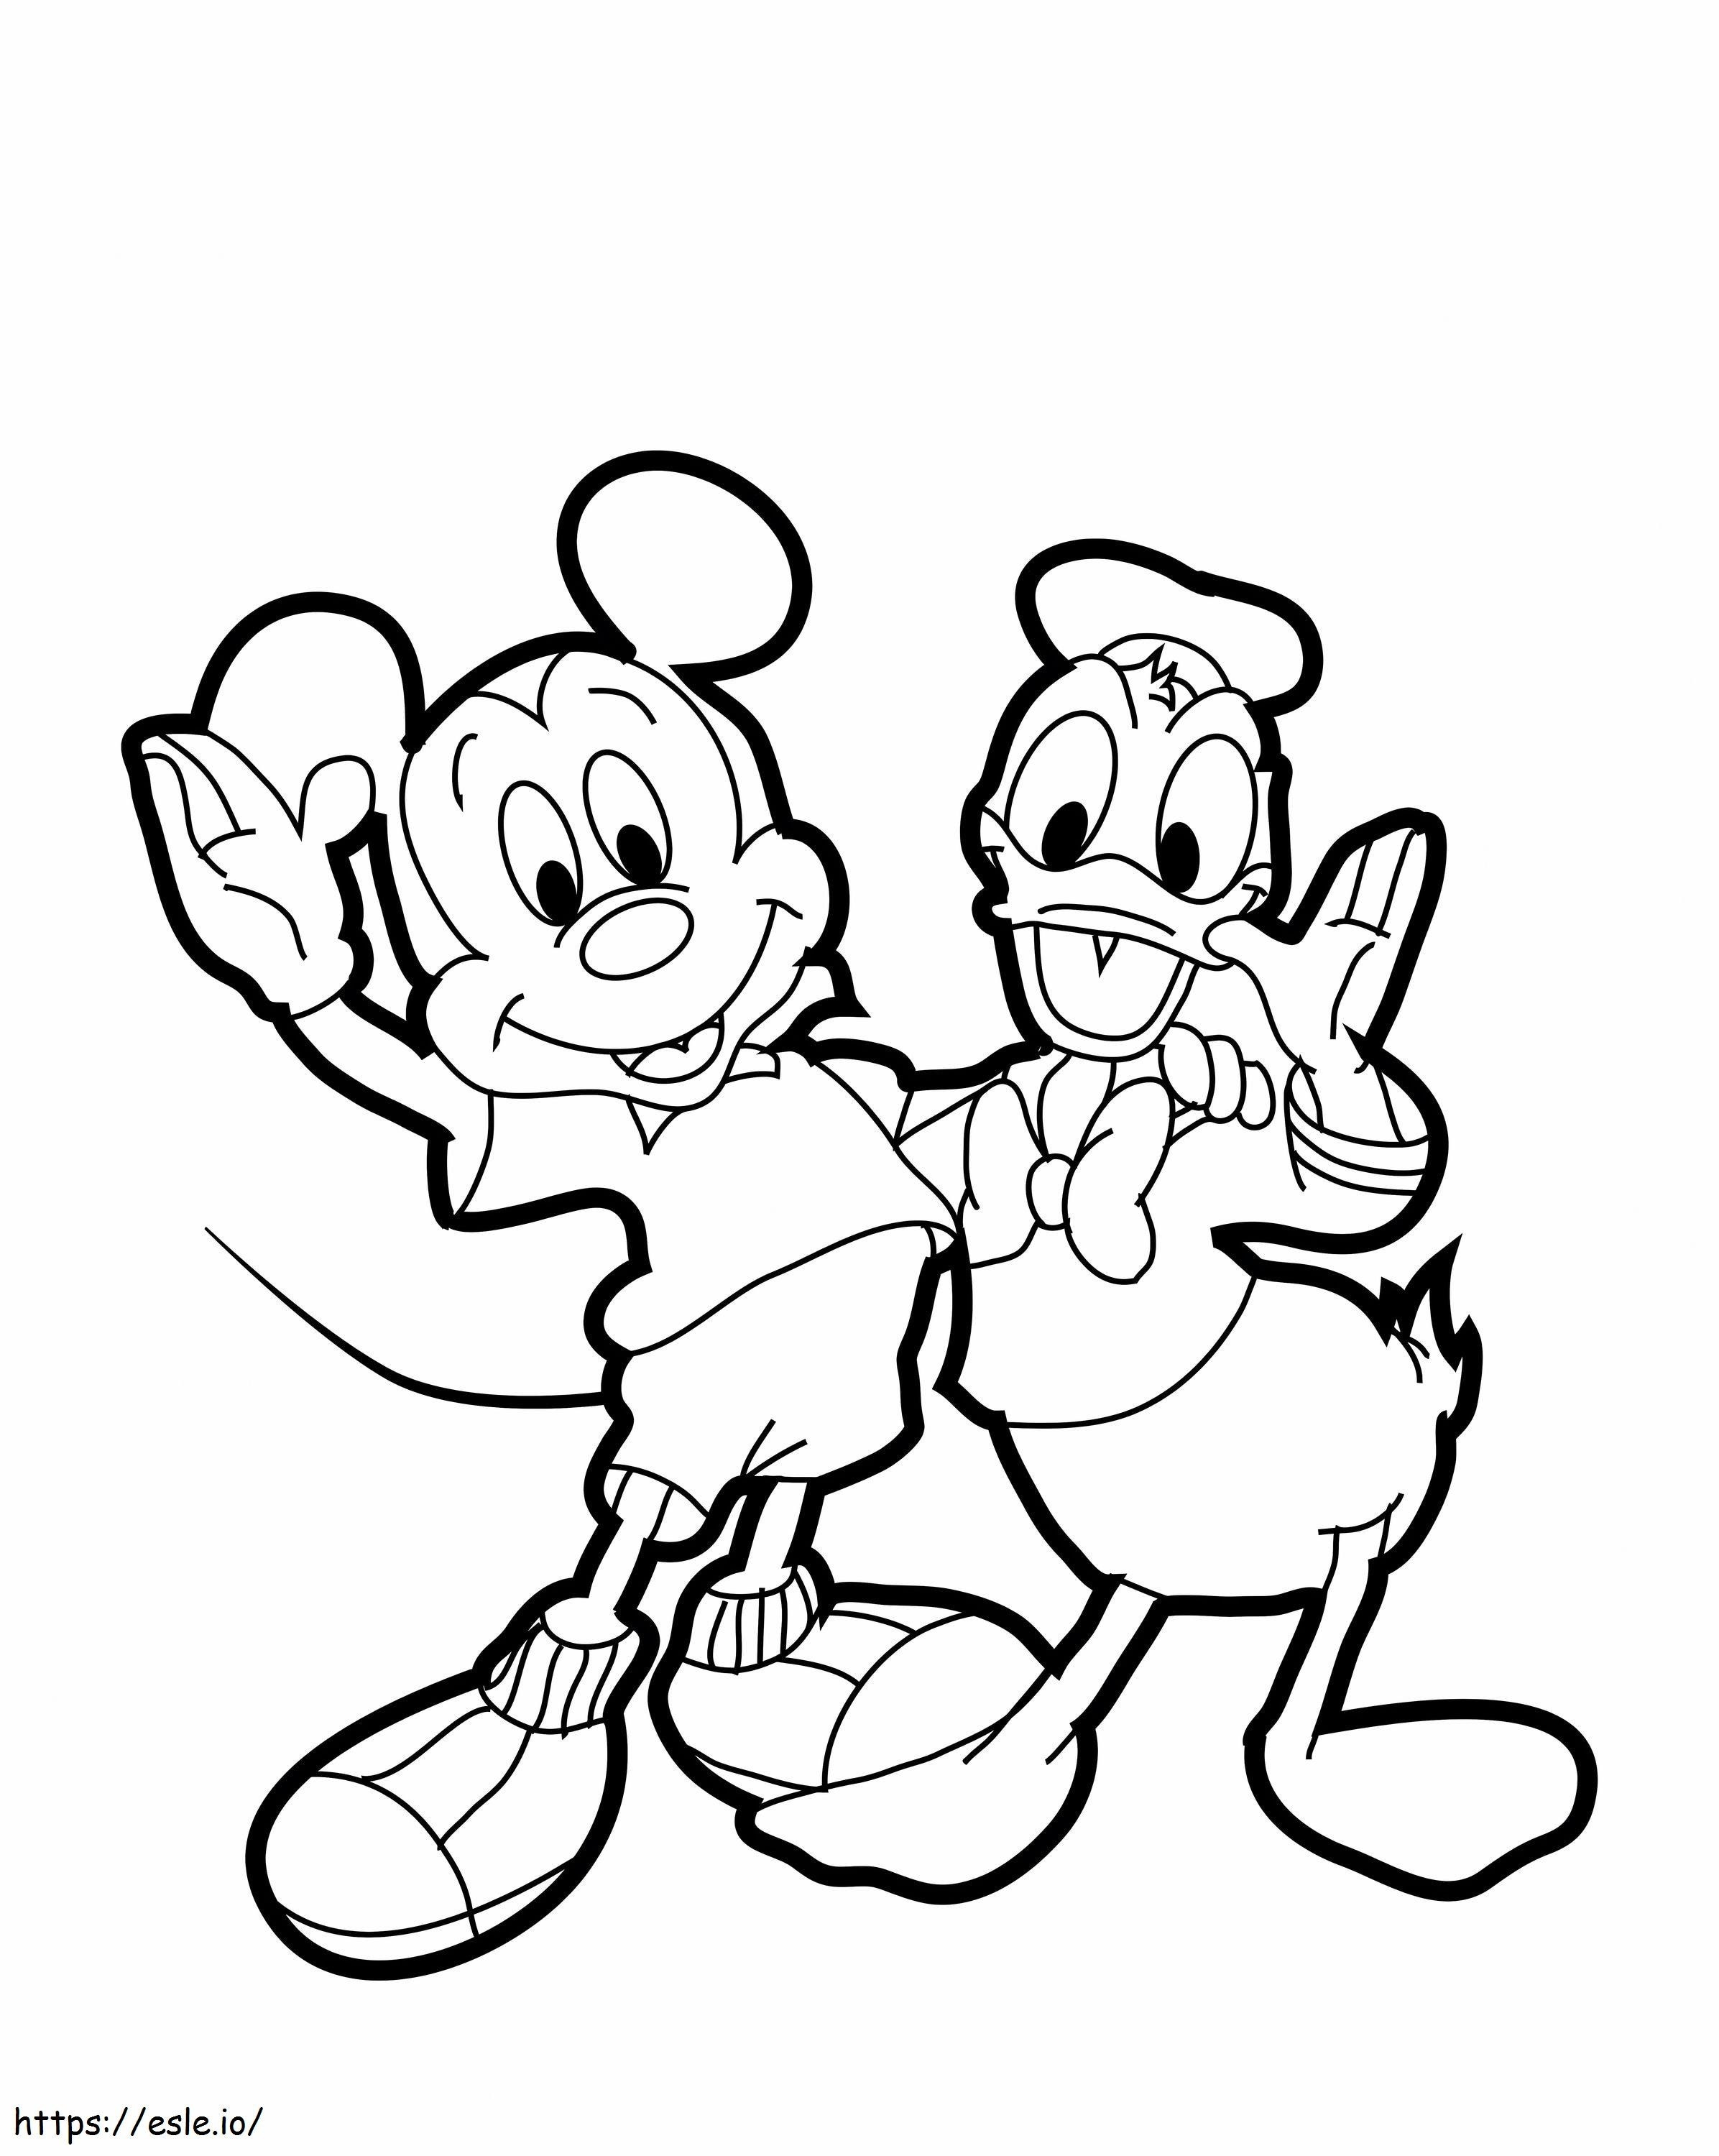 1539922258 Pato Donald Desenhado Mickey Mouse 530605 6841460 para colorir